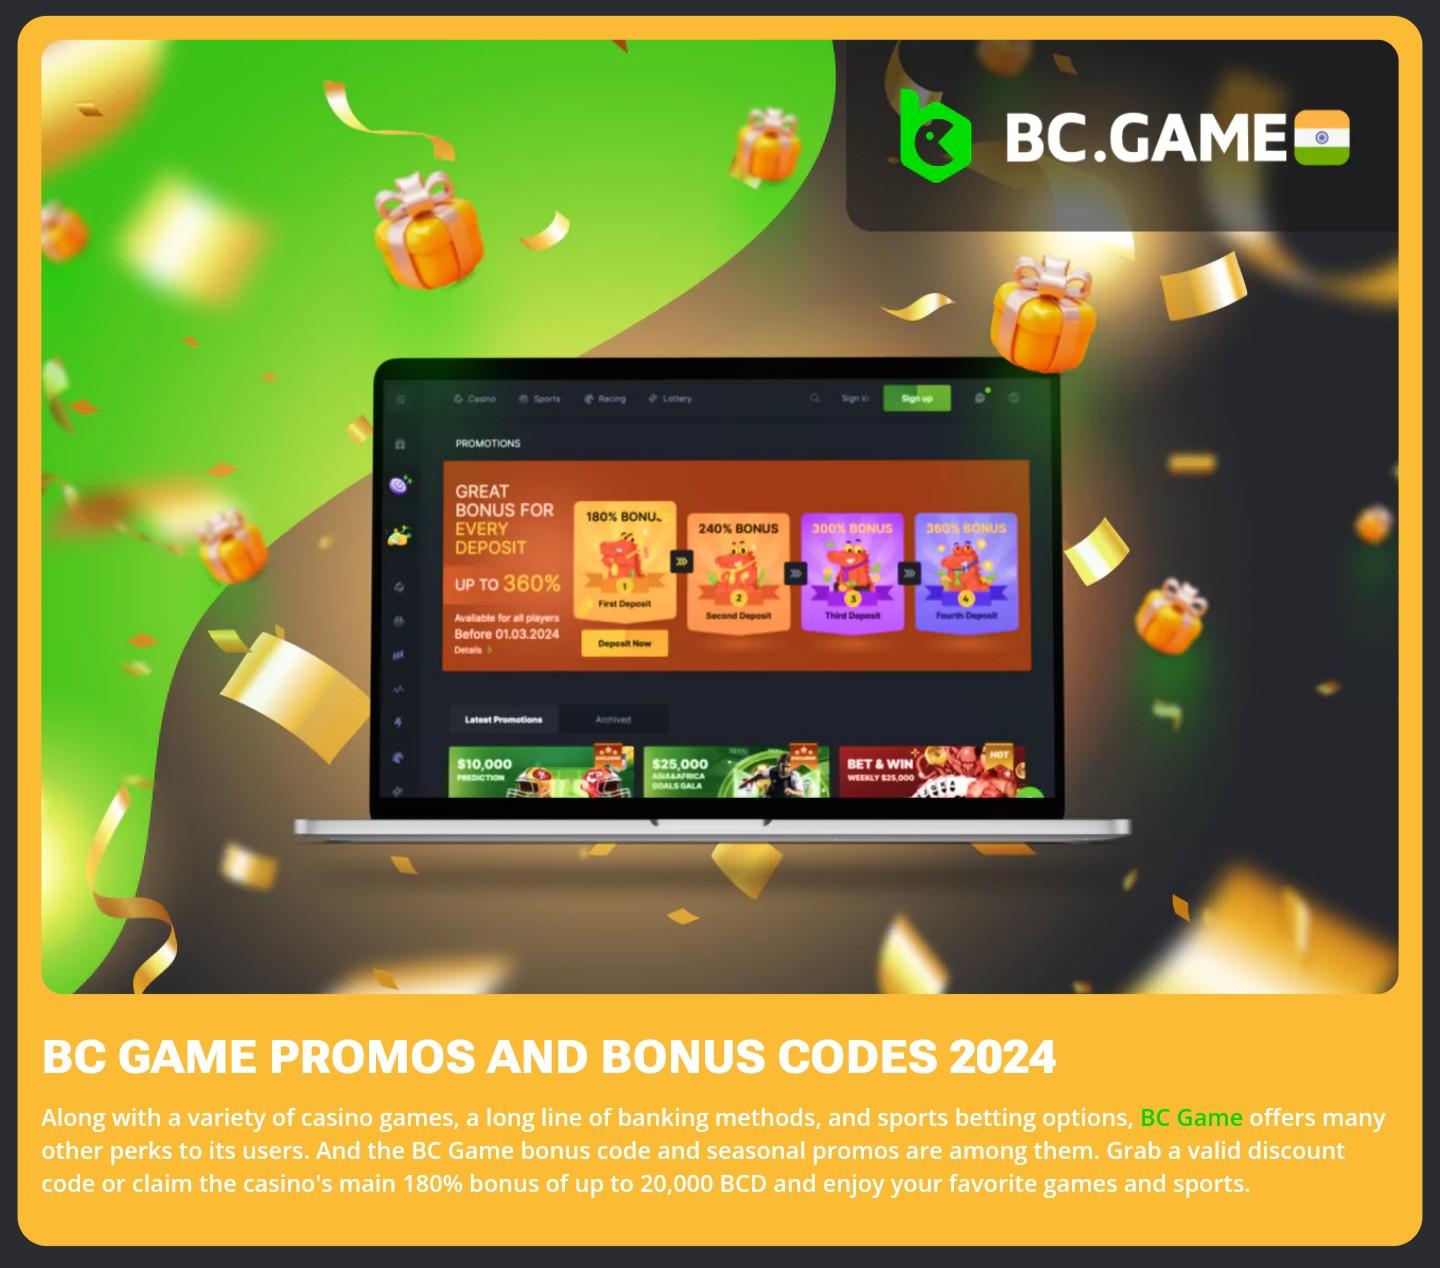 BC.GAMES Promos and Bonus 2024